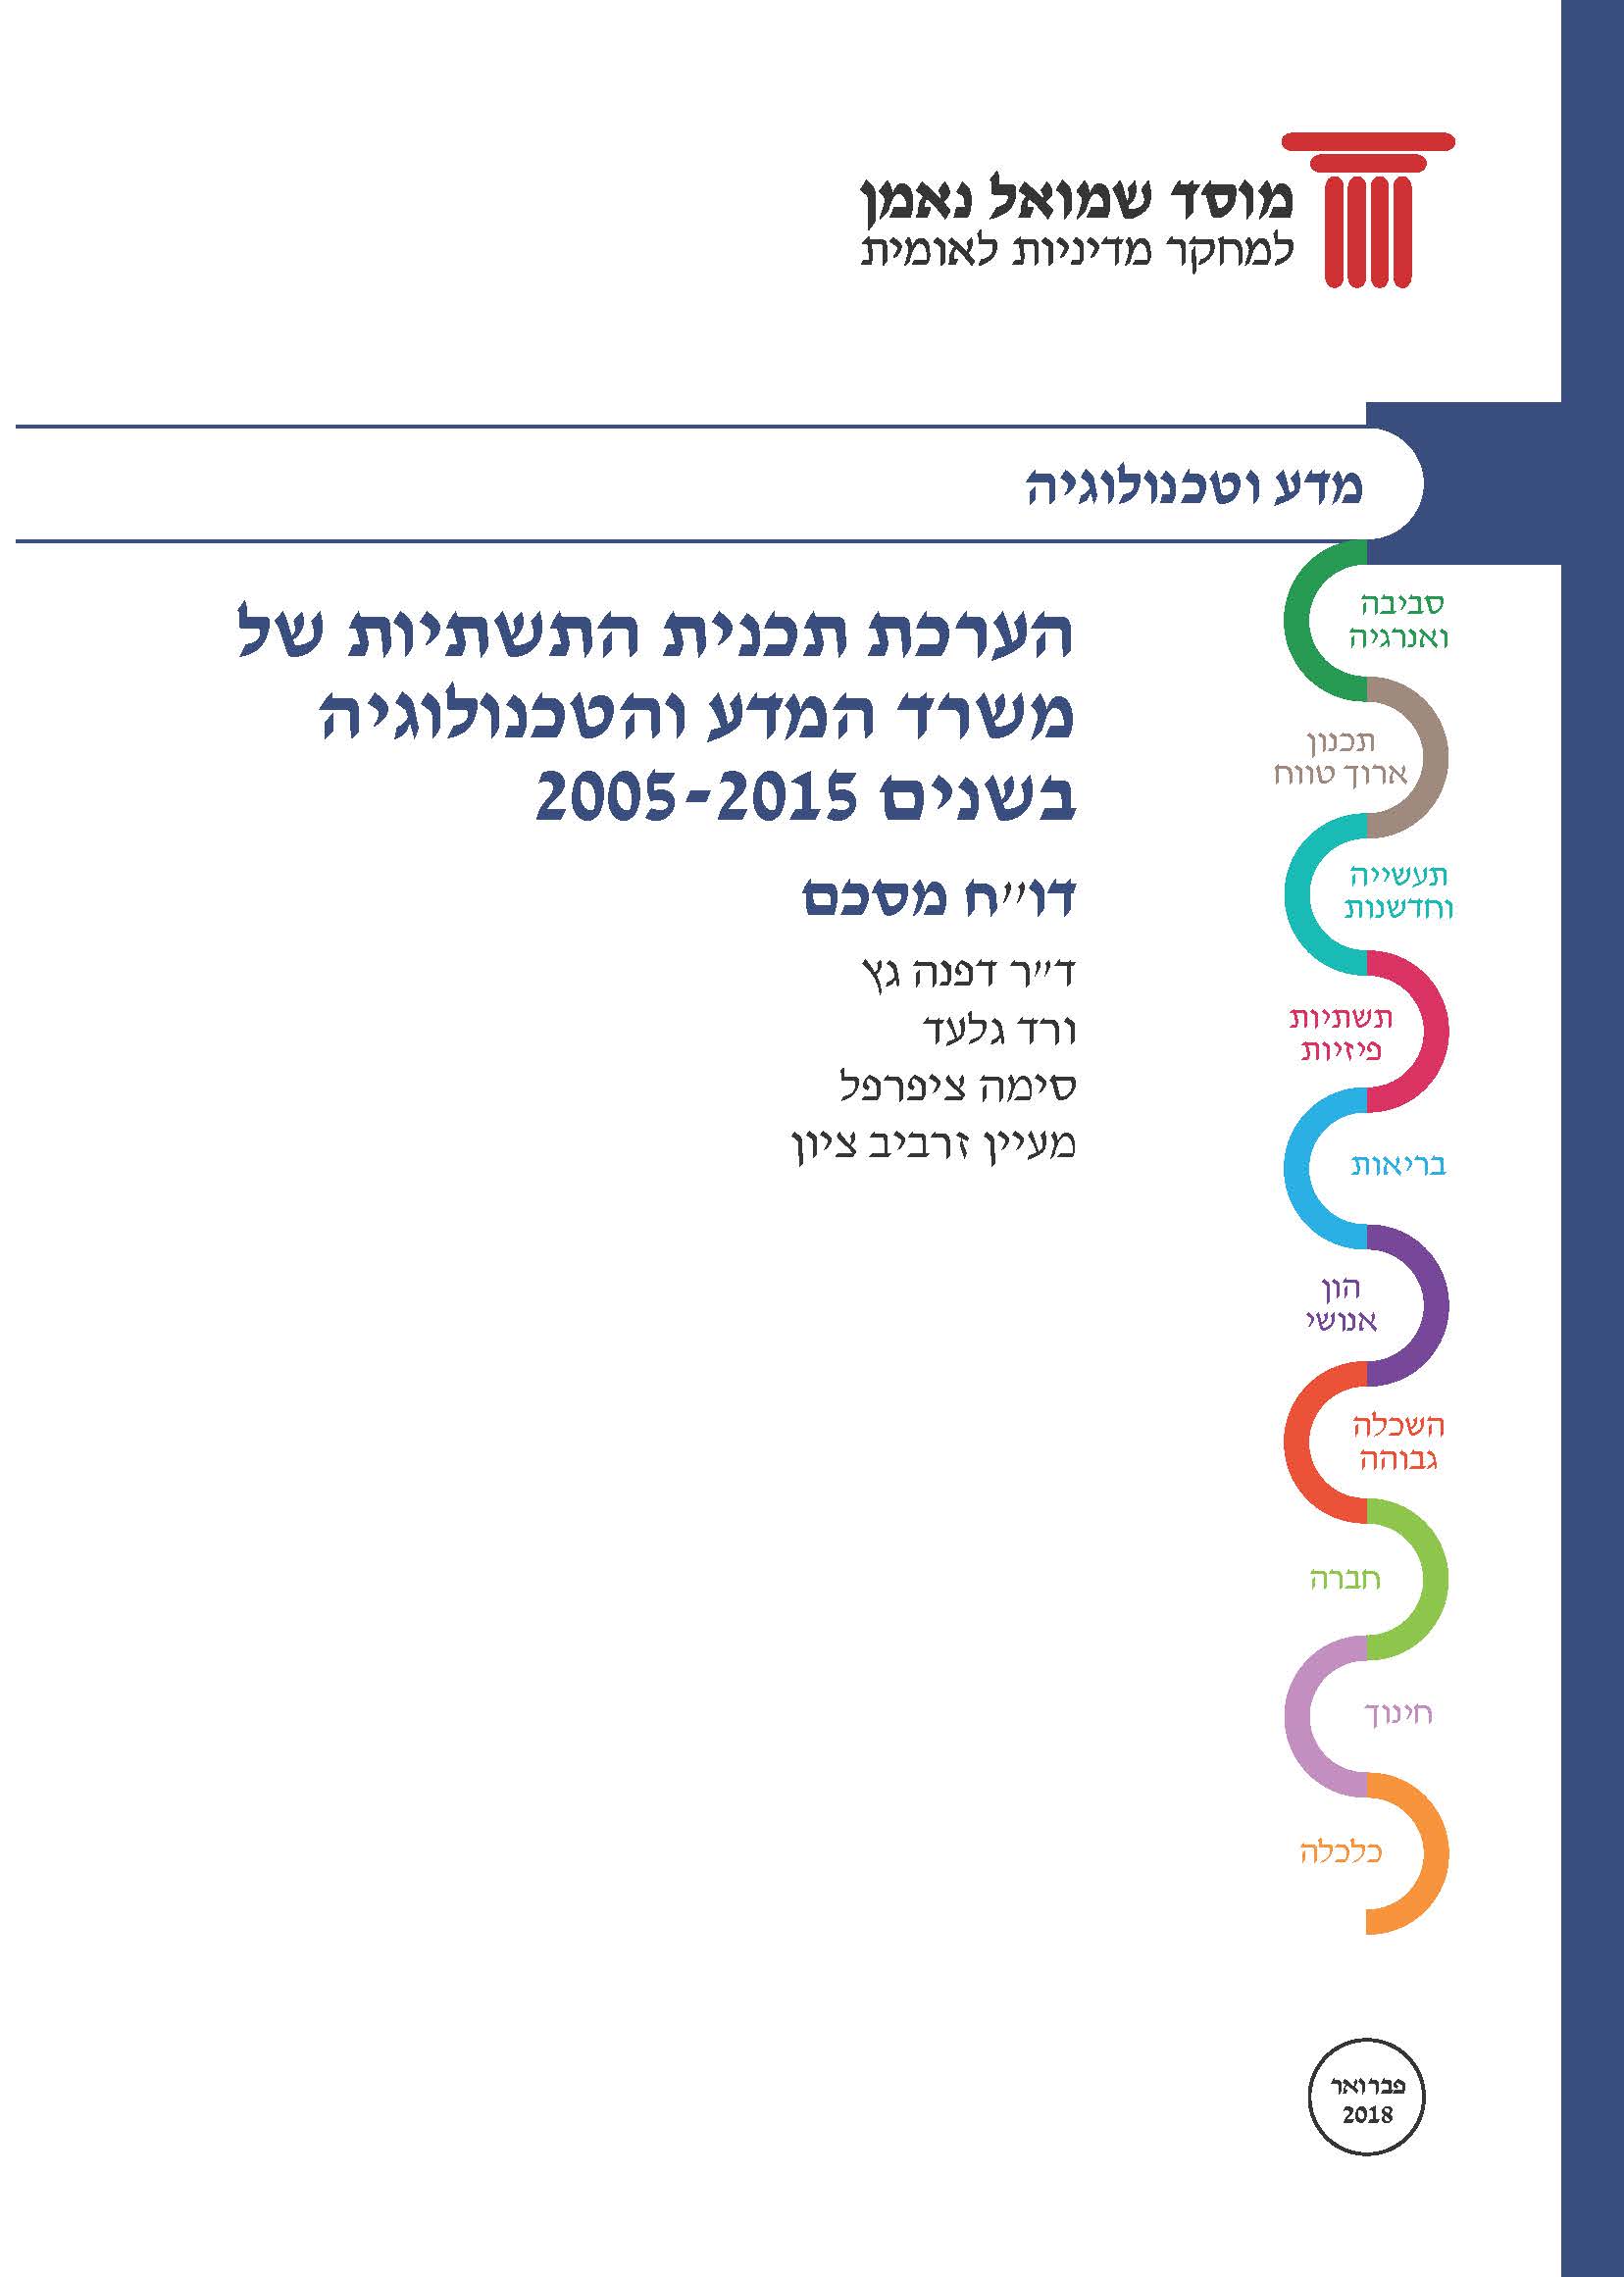 הערכת תכנית התשתיות של משרד המדע והטכנולוגיה בשנים 2005-2015